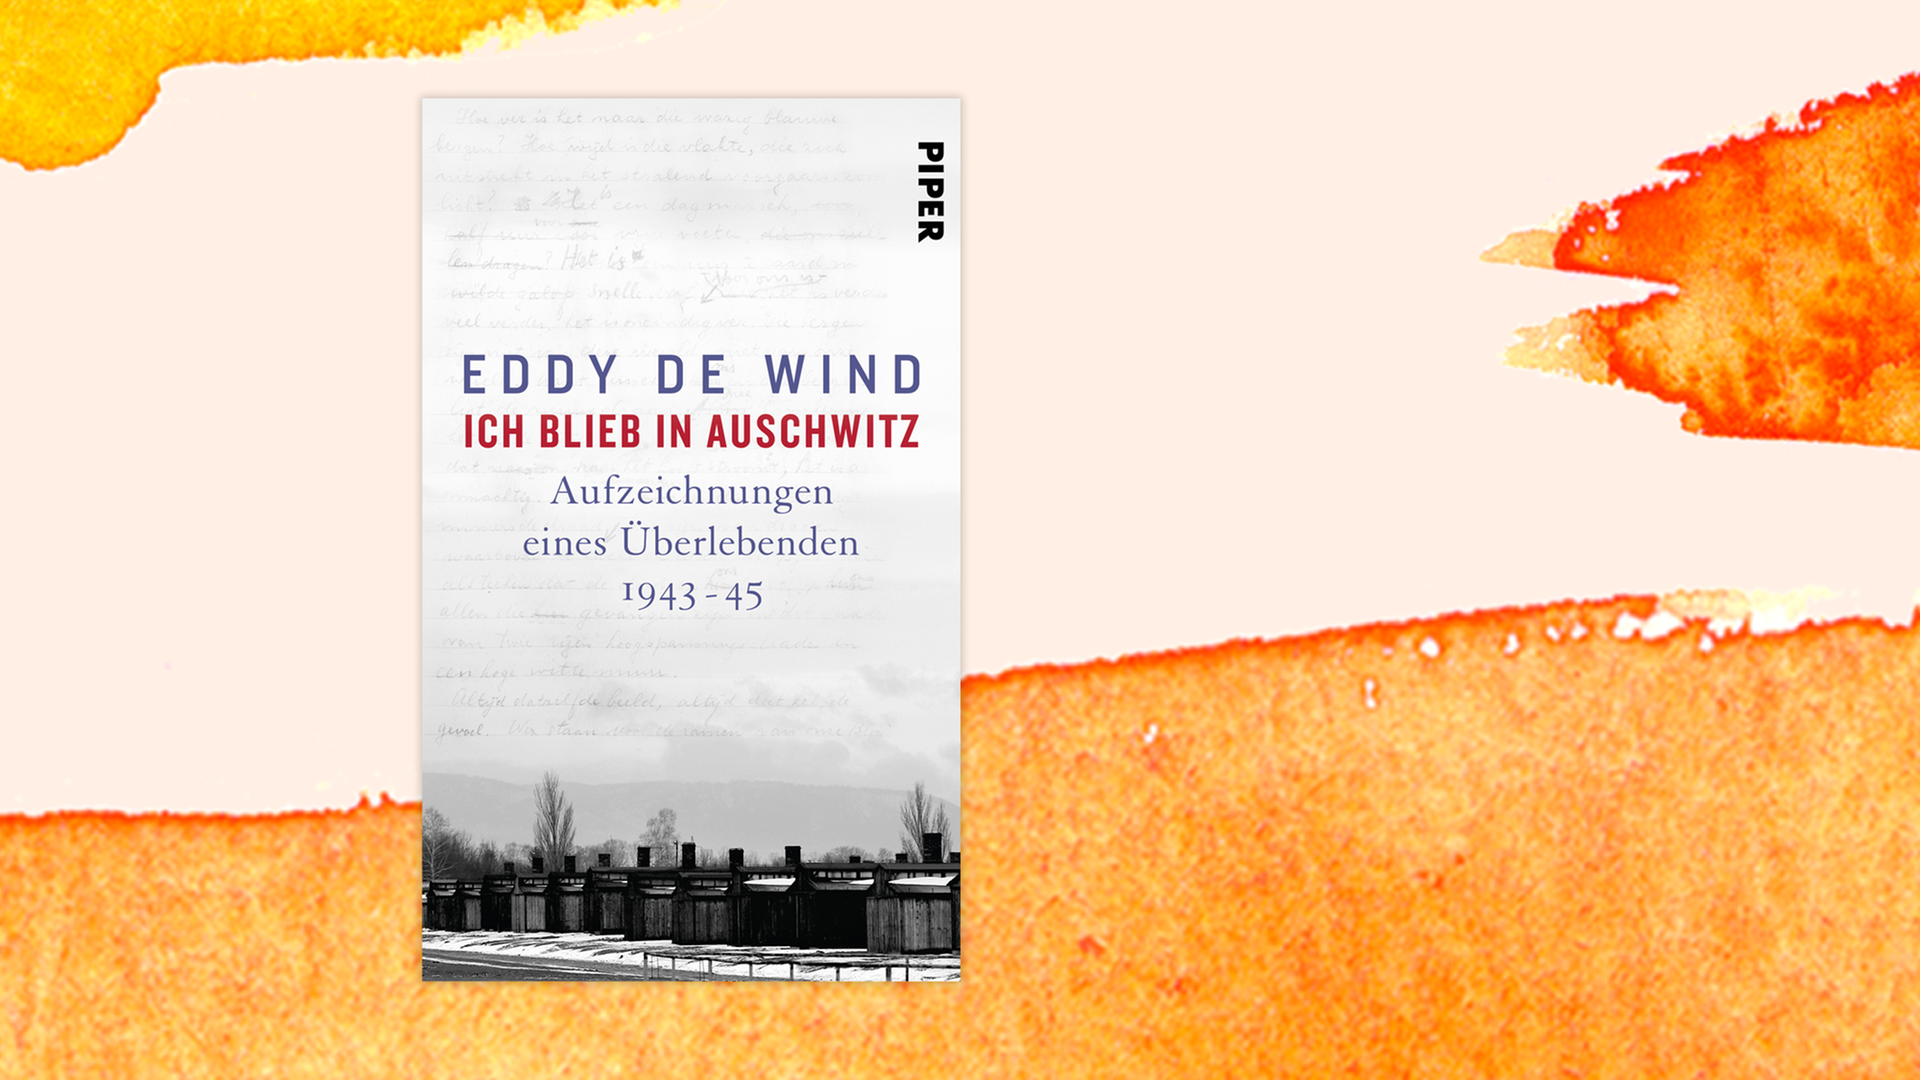 Zu sehen ist das Cover des Buches "Ich blieb in Auschwitz" des Niederländers Eddy de Wind.